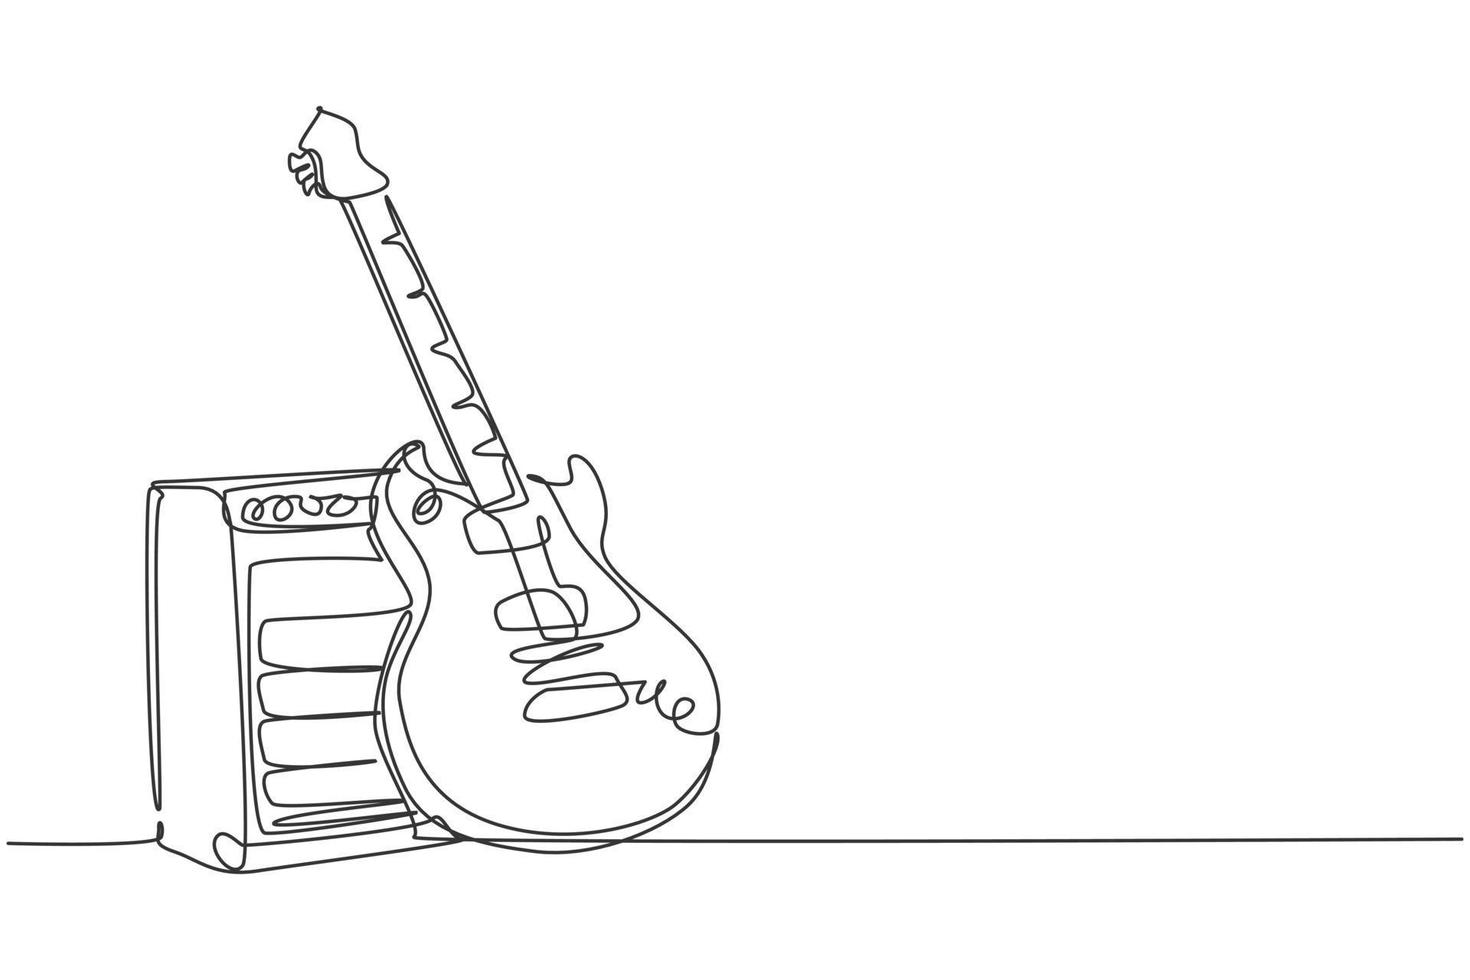 eine einzige strichzeichnung einer e-gitarre mit verstärker. Konzept für Saiteninstrumente. trendige durchgehende Linie zeichnen Grafikdesign-Vektorillustration vektor